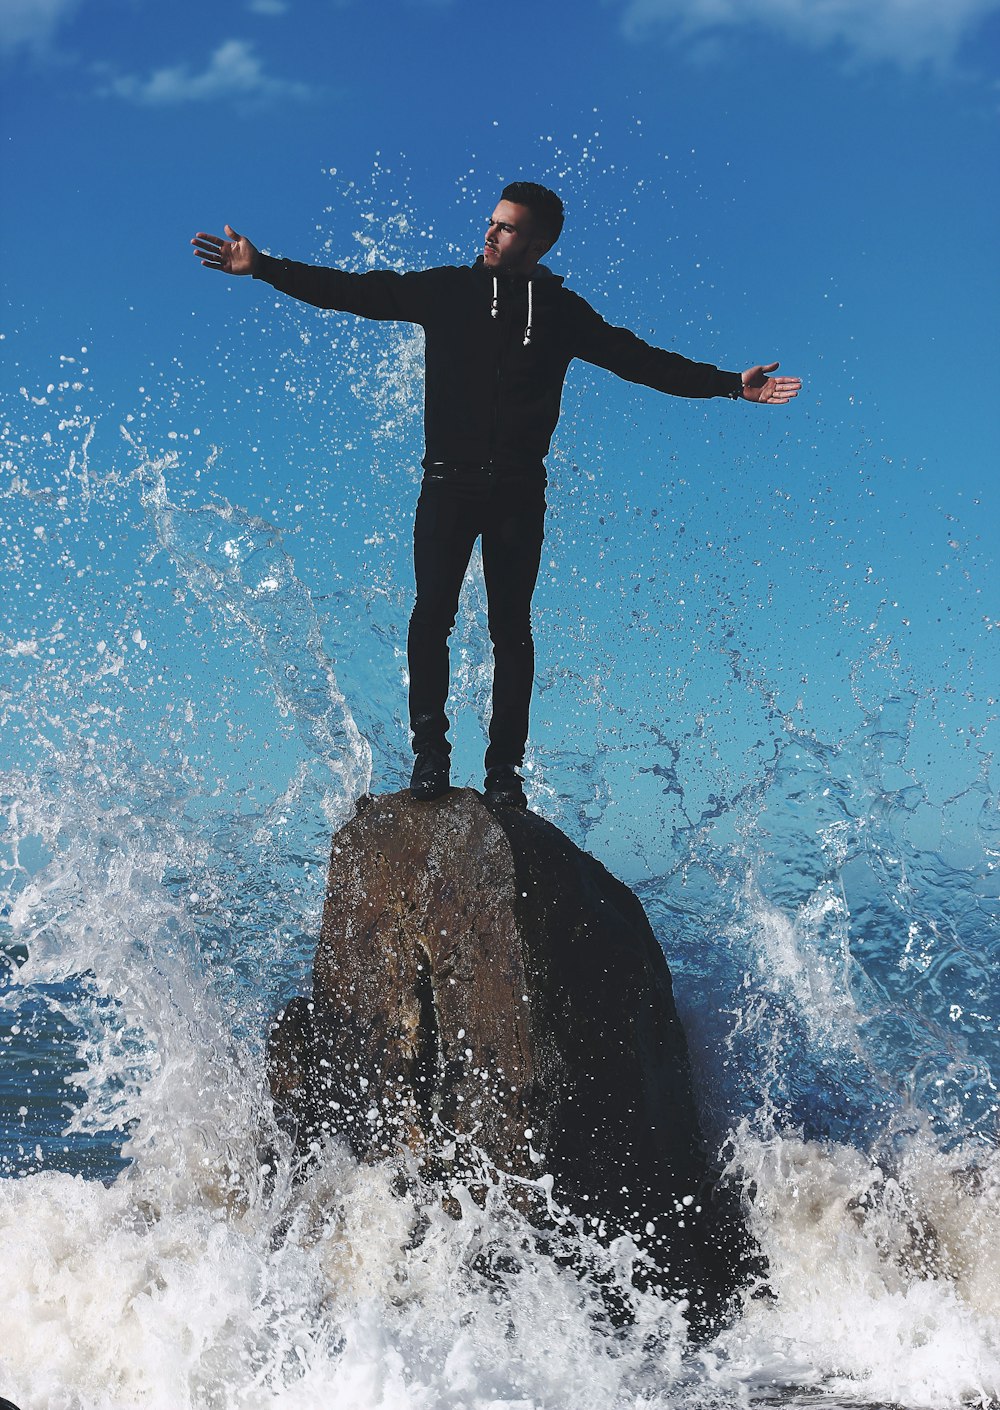 물에 둘러싸인 바위 위에 서 있는 남자